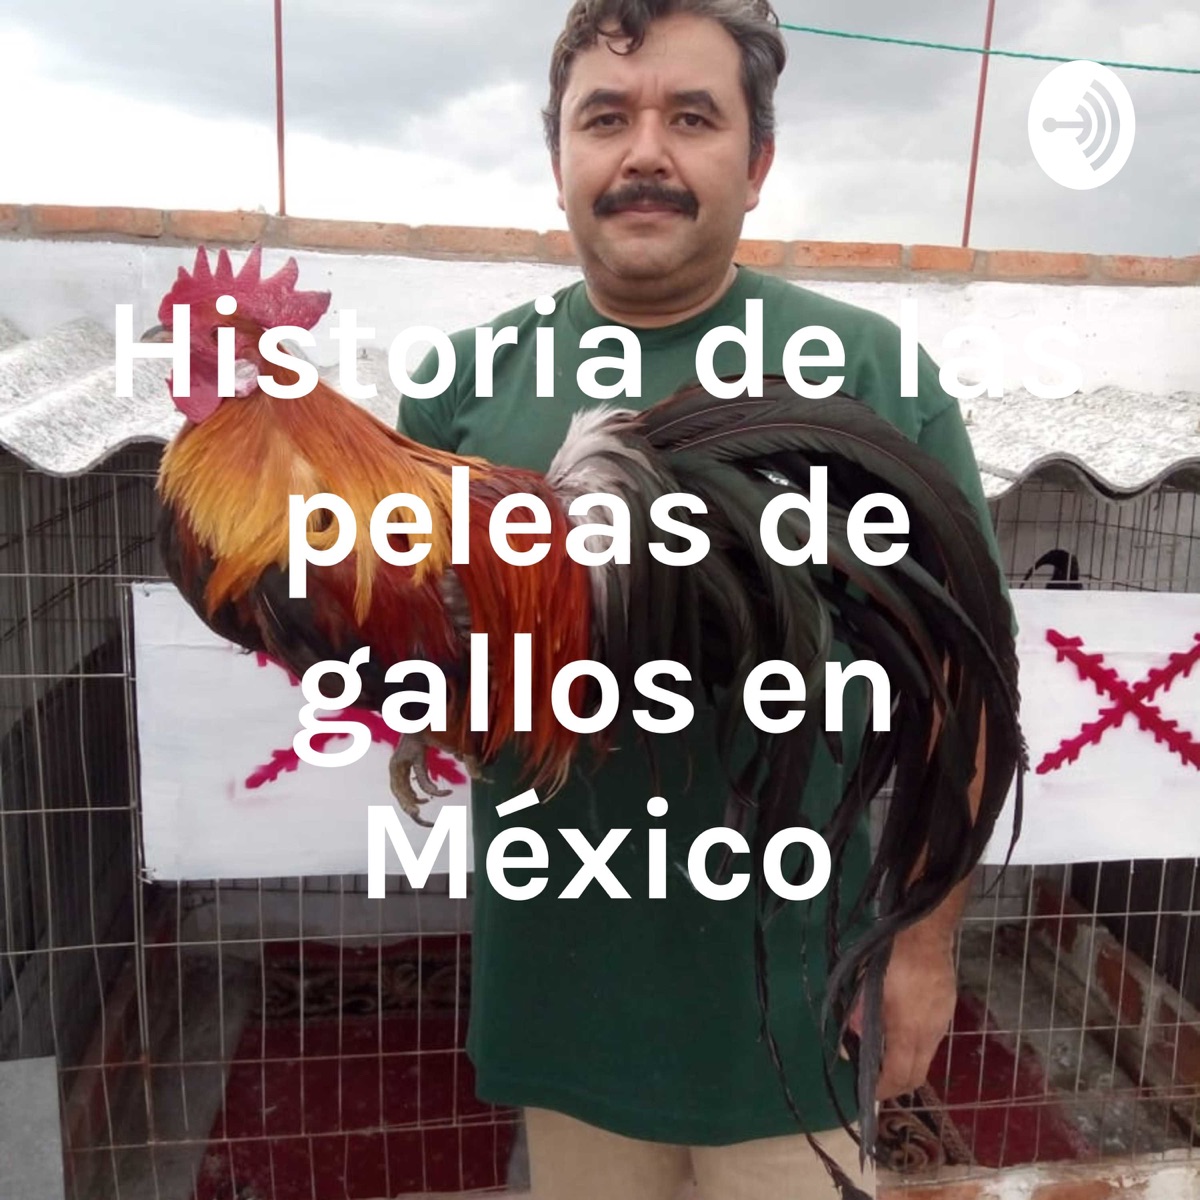 Historia de las peleas de gallos en México